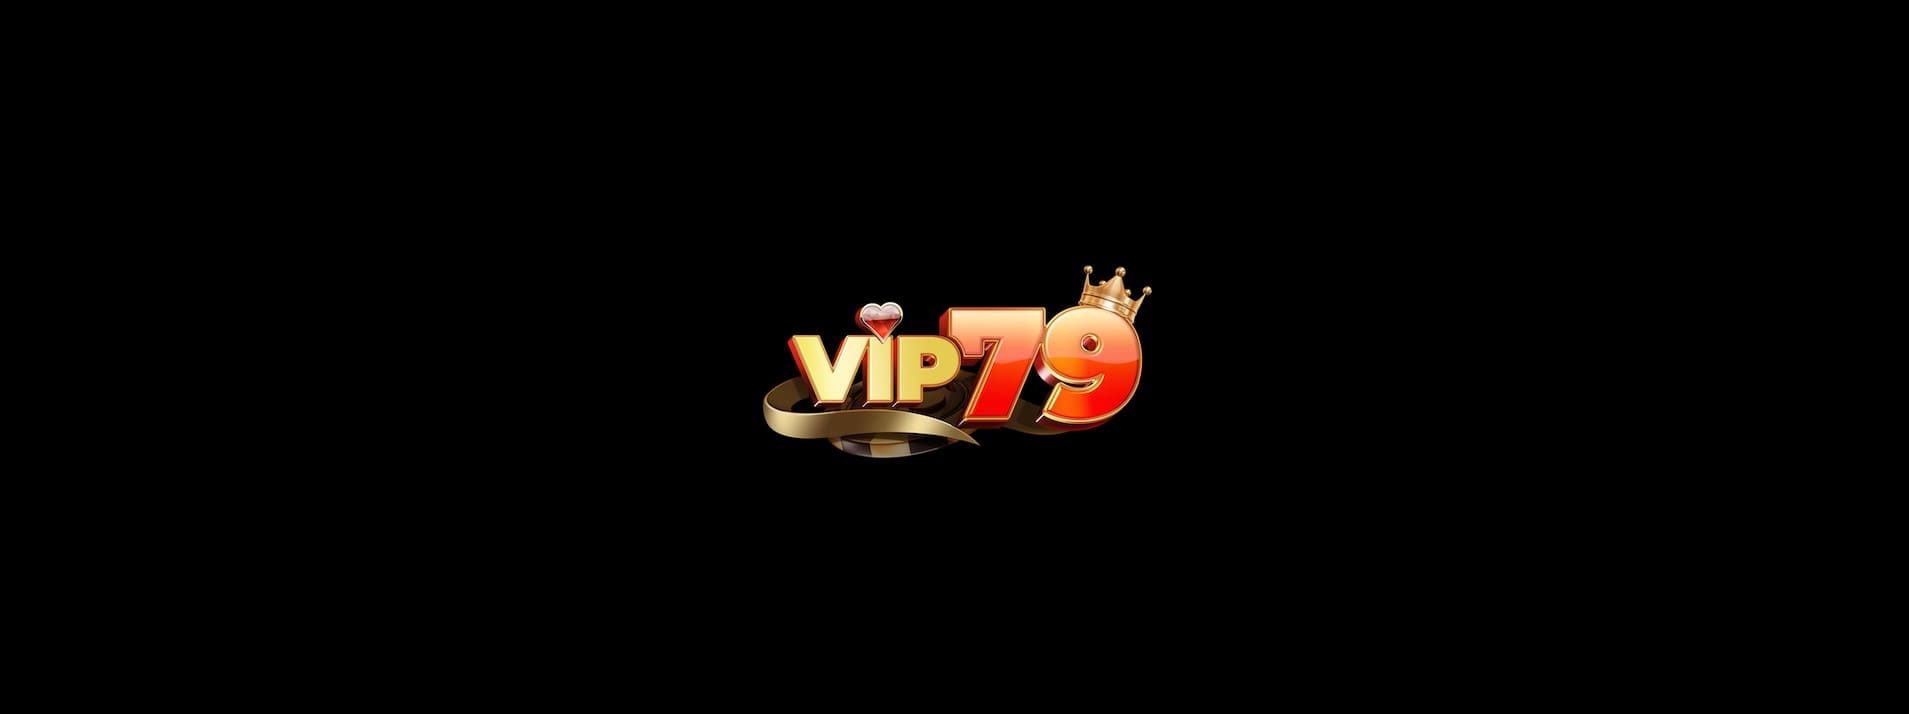 Vip79 Win game vượt thời gian| Đăng ký Vip79.Win miễn phí